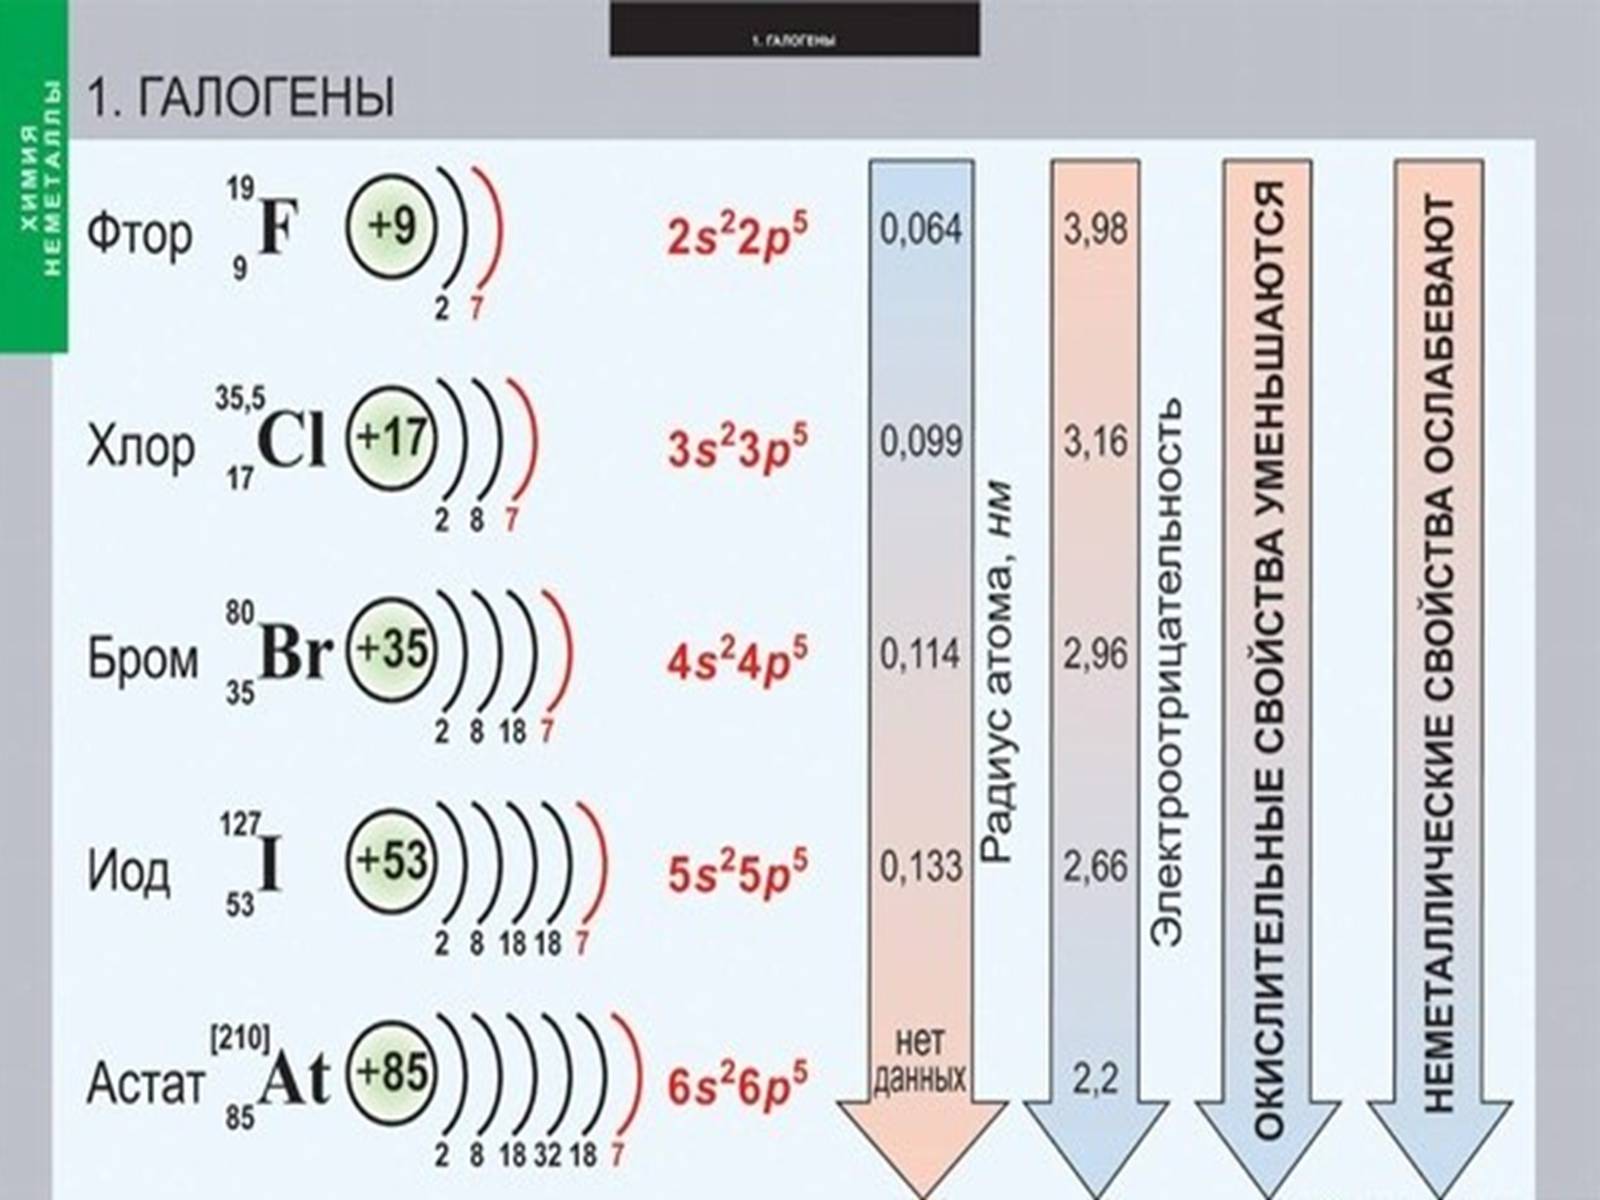 Хлор бром селен. Формула фтор строение электронных оболочек. Составьте схему электронного строения атома брома. Галогены. Электронное строение галогенов.